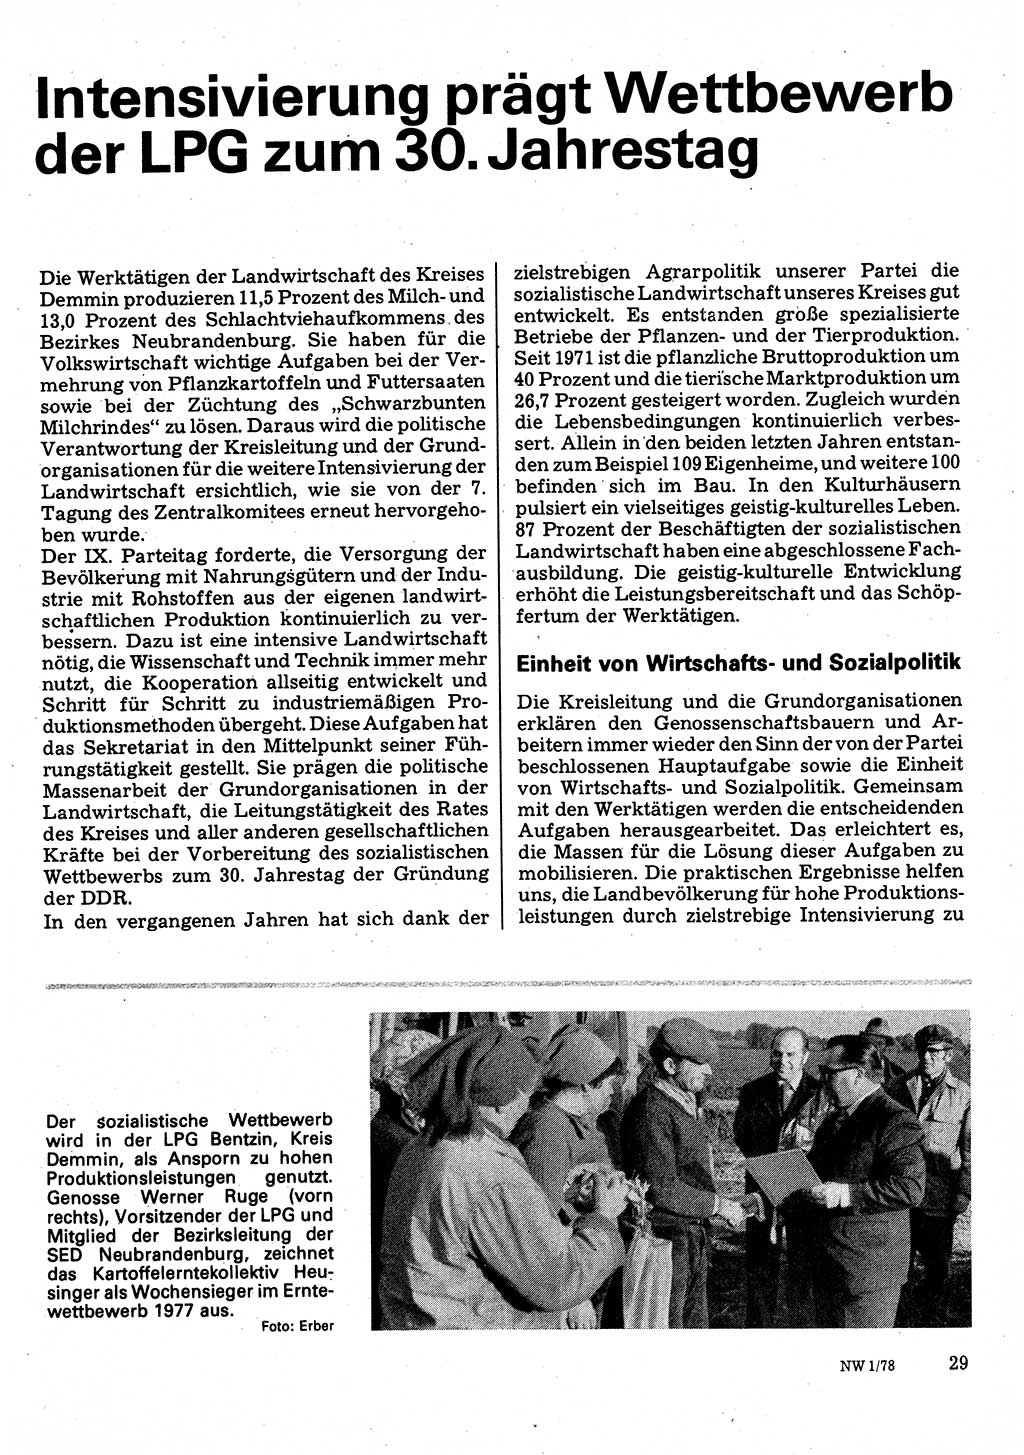 Neuer Weg (NW), Organ des Zentralkomitees (ZK) der SED (Sozialistische Einheitspartei Deutschlands) für Fragen des Parteilebens, 33. Jahrgang [Deutsche Demokratische Republik (DDR)] 1978, Seite 29 (NW ZK SED DDR 1978, S. 29)